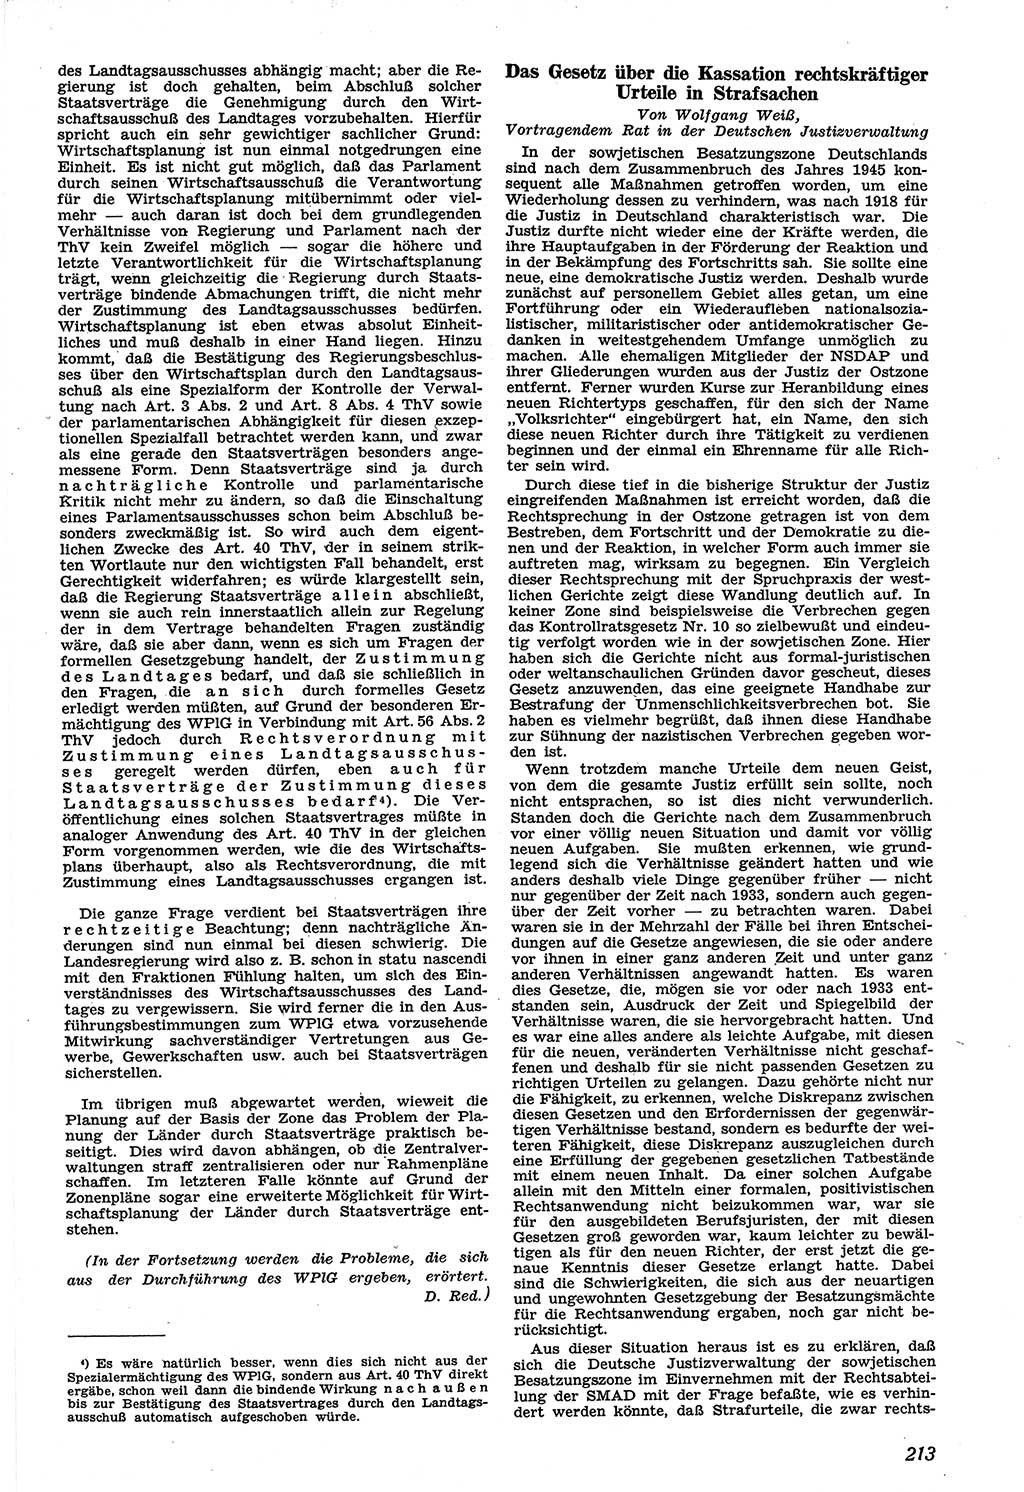 Neue Justiz (NJ), Zeitschrift für Recht und Rechtswissenschaft [Sowjetische Besatzungszone (SBZ) Deutschland], 1. Jahrgang 1947, Seite 213 (NJ SBZ Dtl. 1947, S. 213)